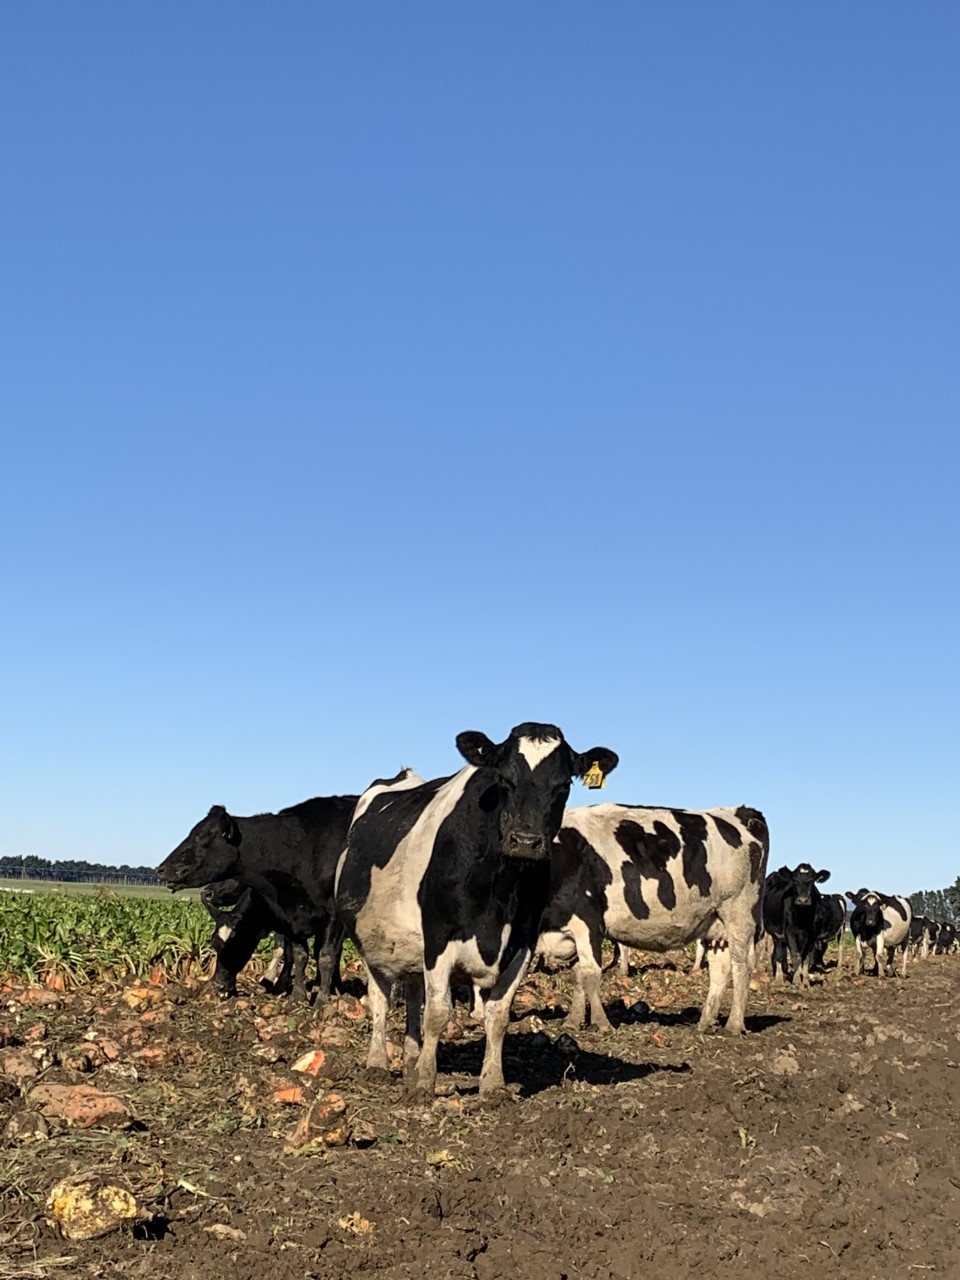 Frisian cows in a field in Aotearoa New Zealand